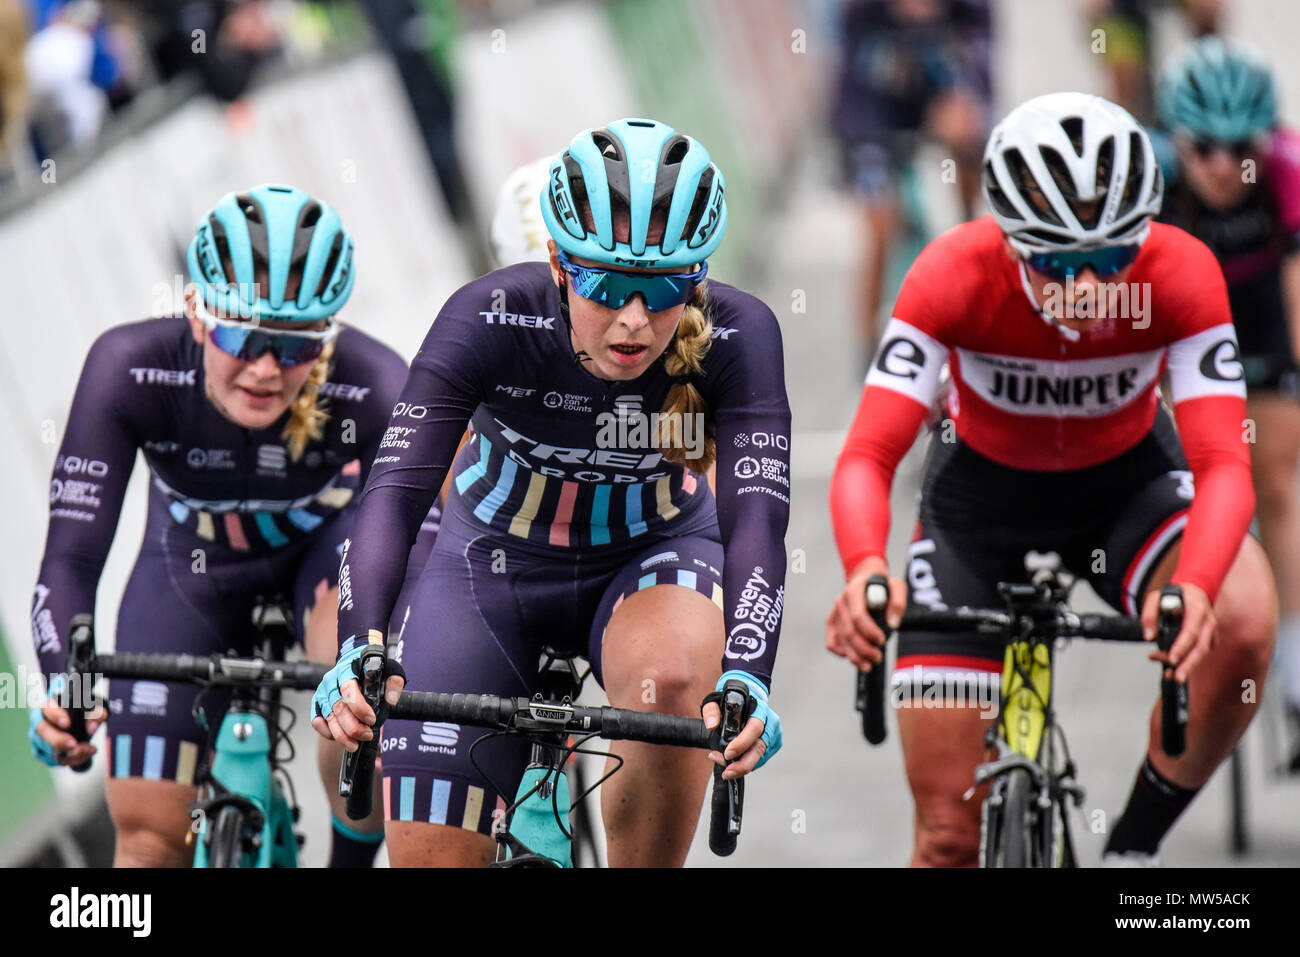 Annie Simpson von Trek Tropfen racing in der Elite Frauen 2018 OVO Energy Tour Serie Radrennen im Wembley, London, UK. Runde 7 Bike Race. Stockfoto